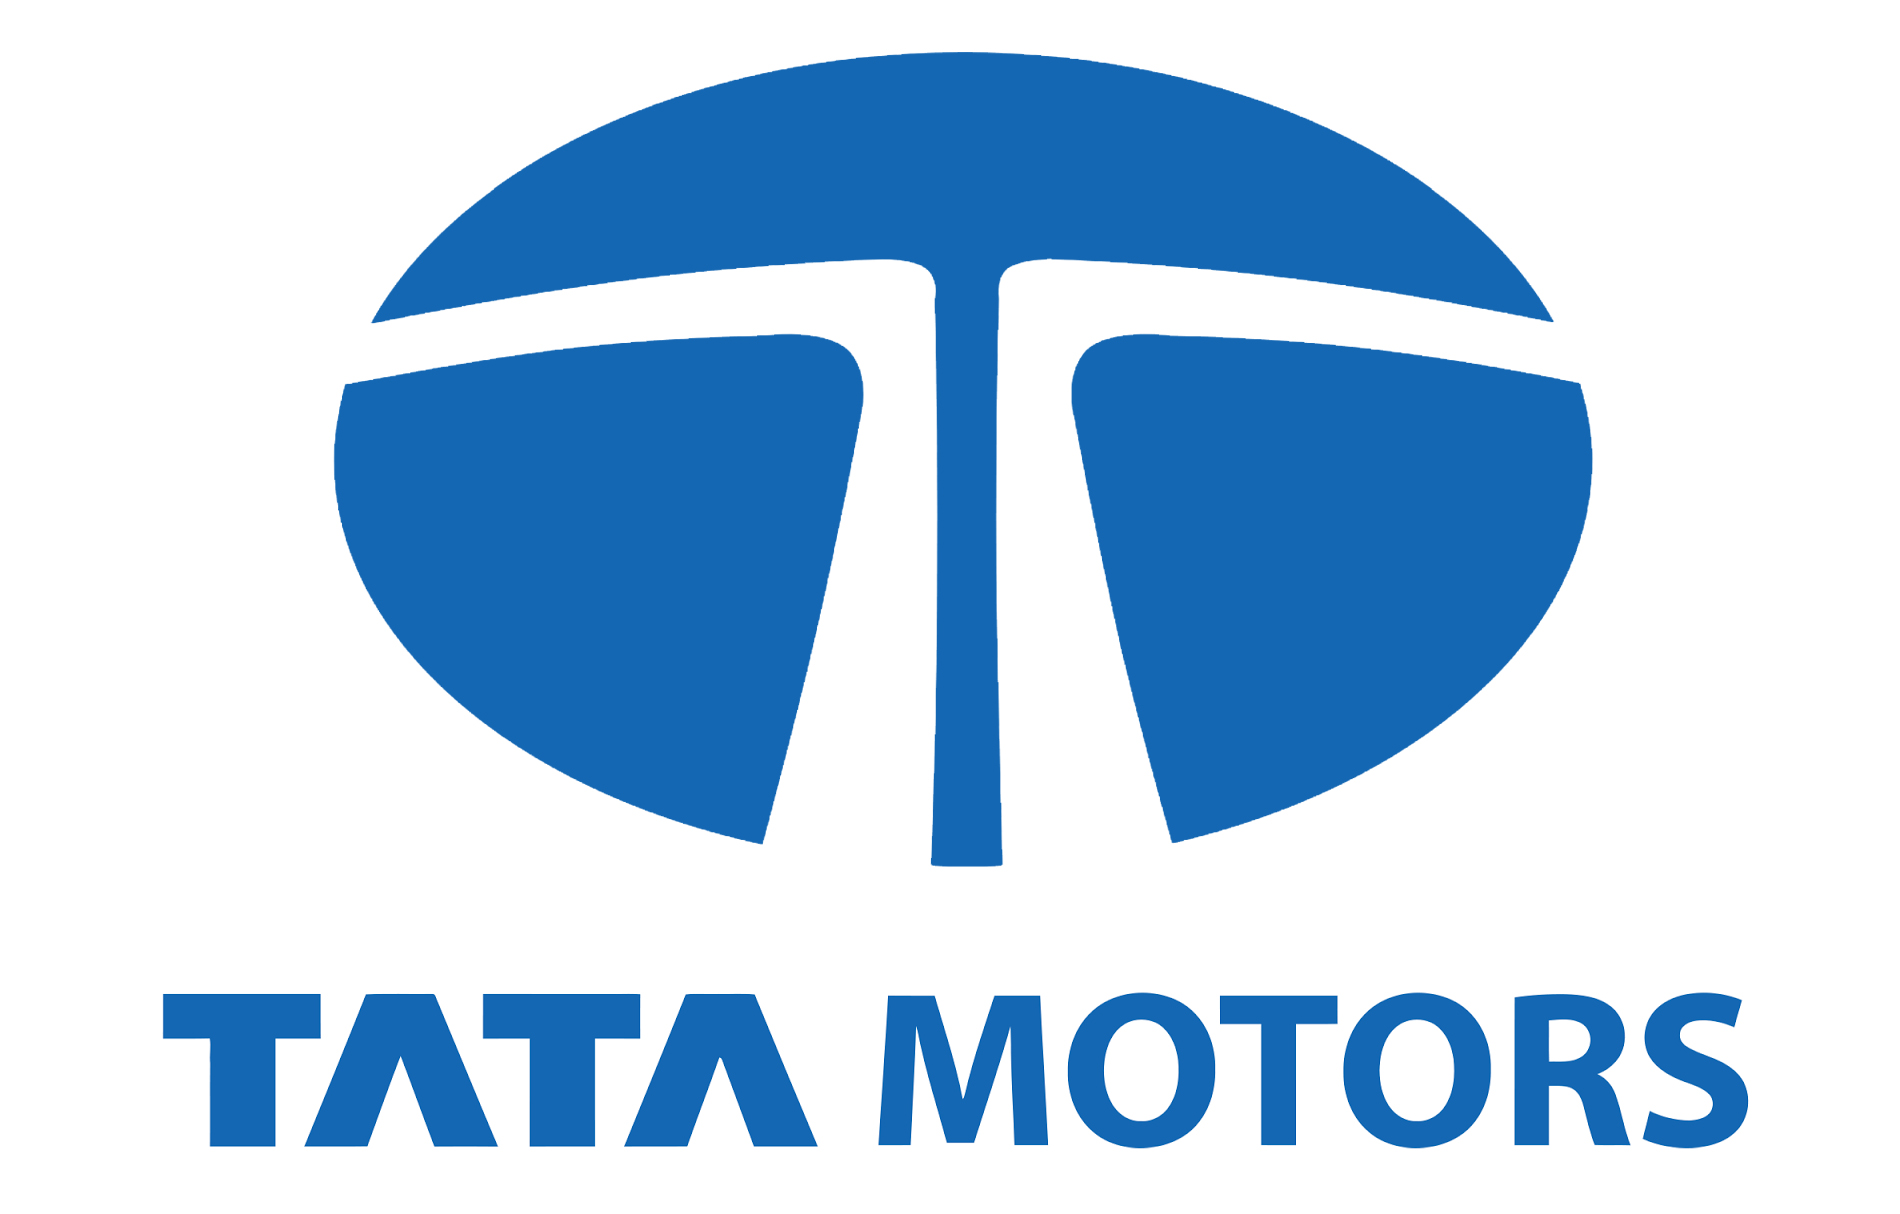 Tata Motors Cars Showroom - R A Motors|Show Room|Automotive